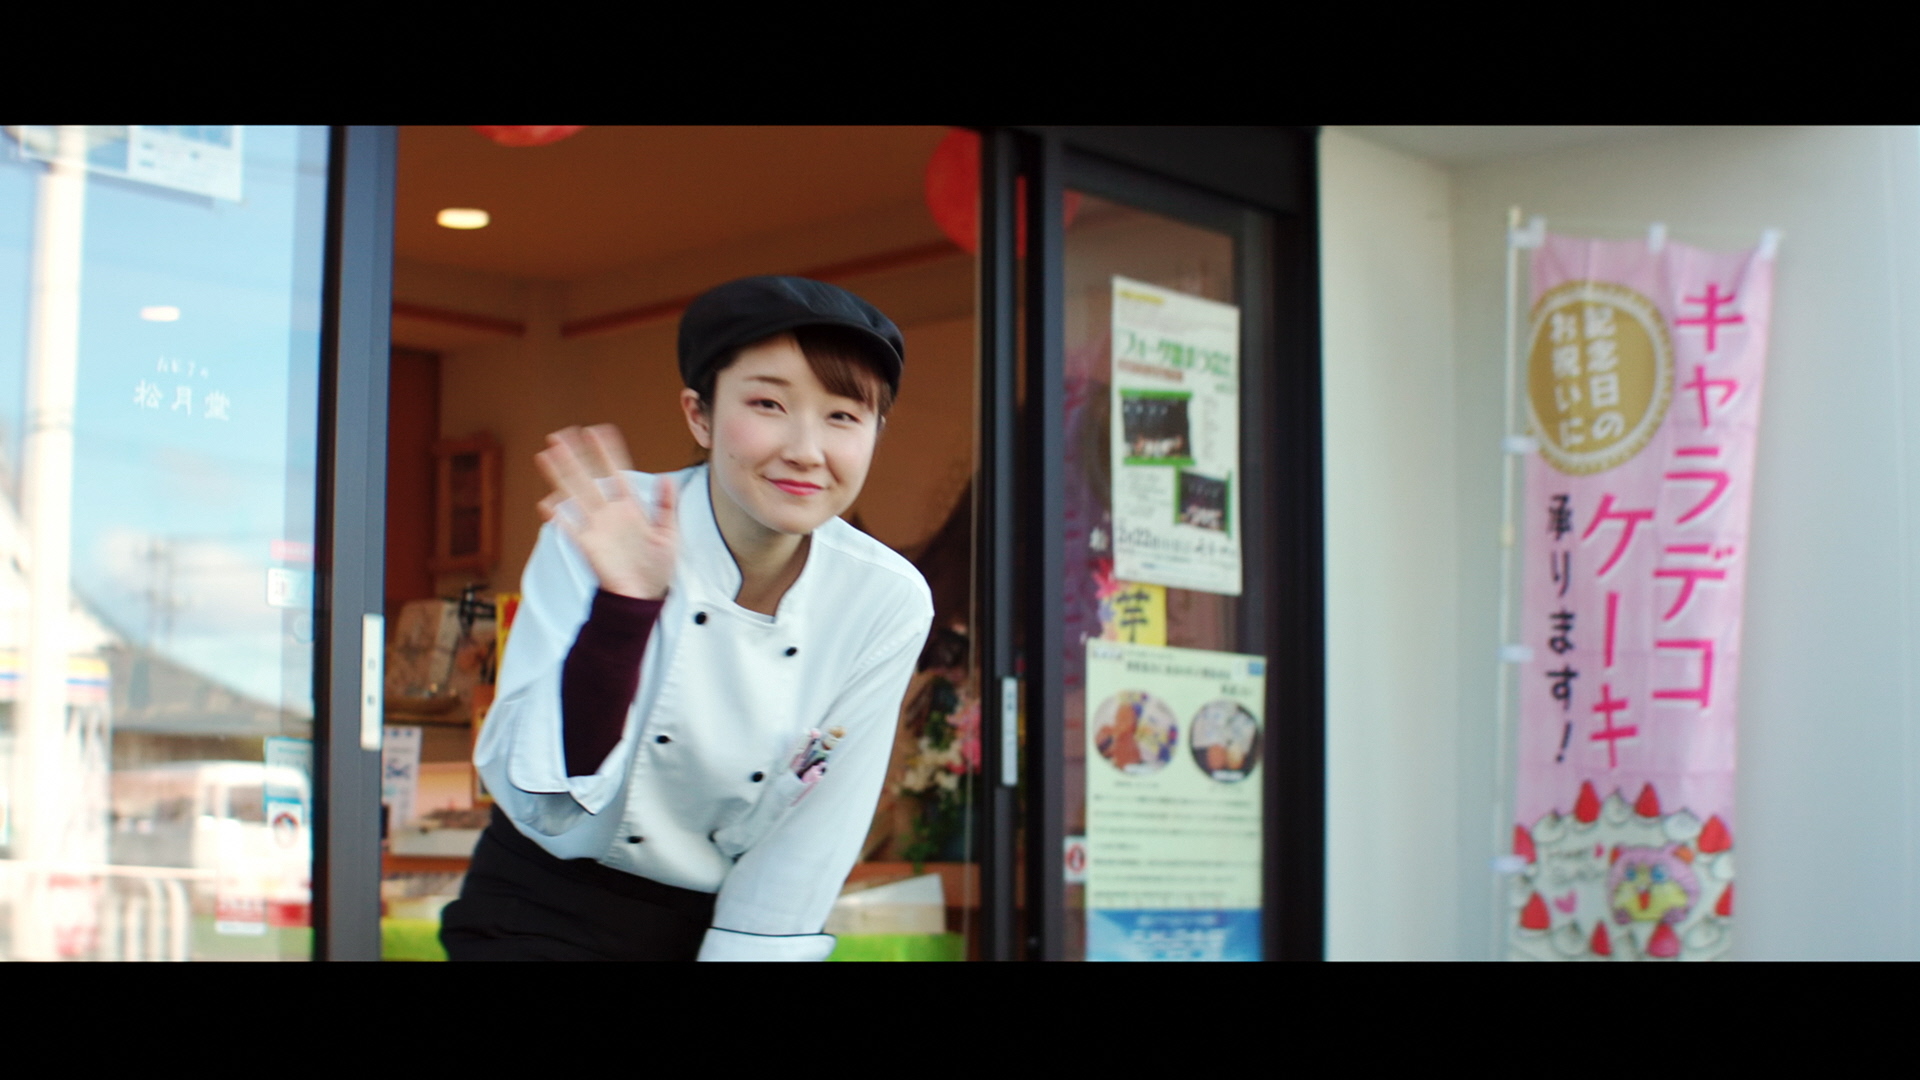 動画のサムネイル 配送ロボットに手を振る菓子店の人